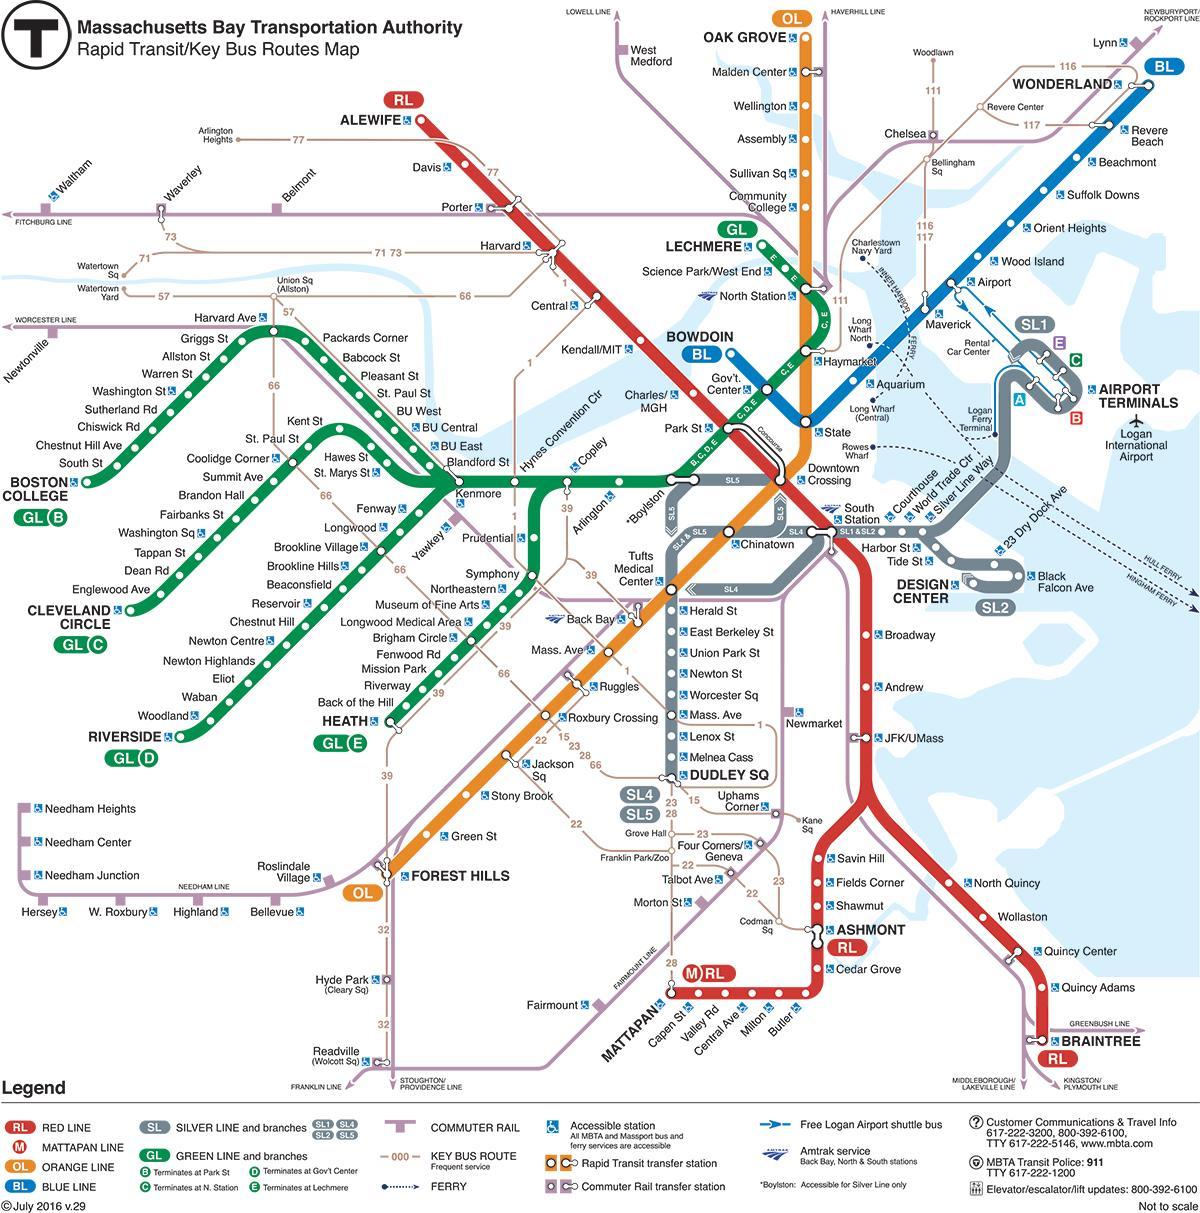 green line zemljevid Boston